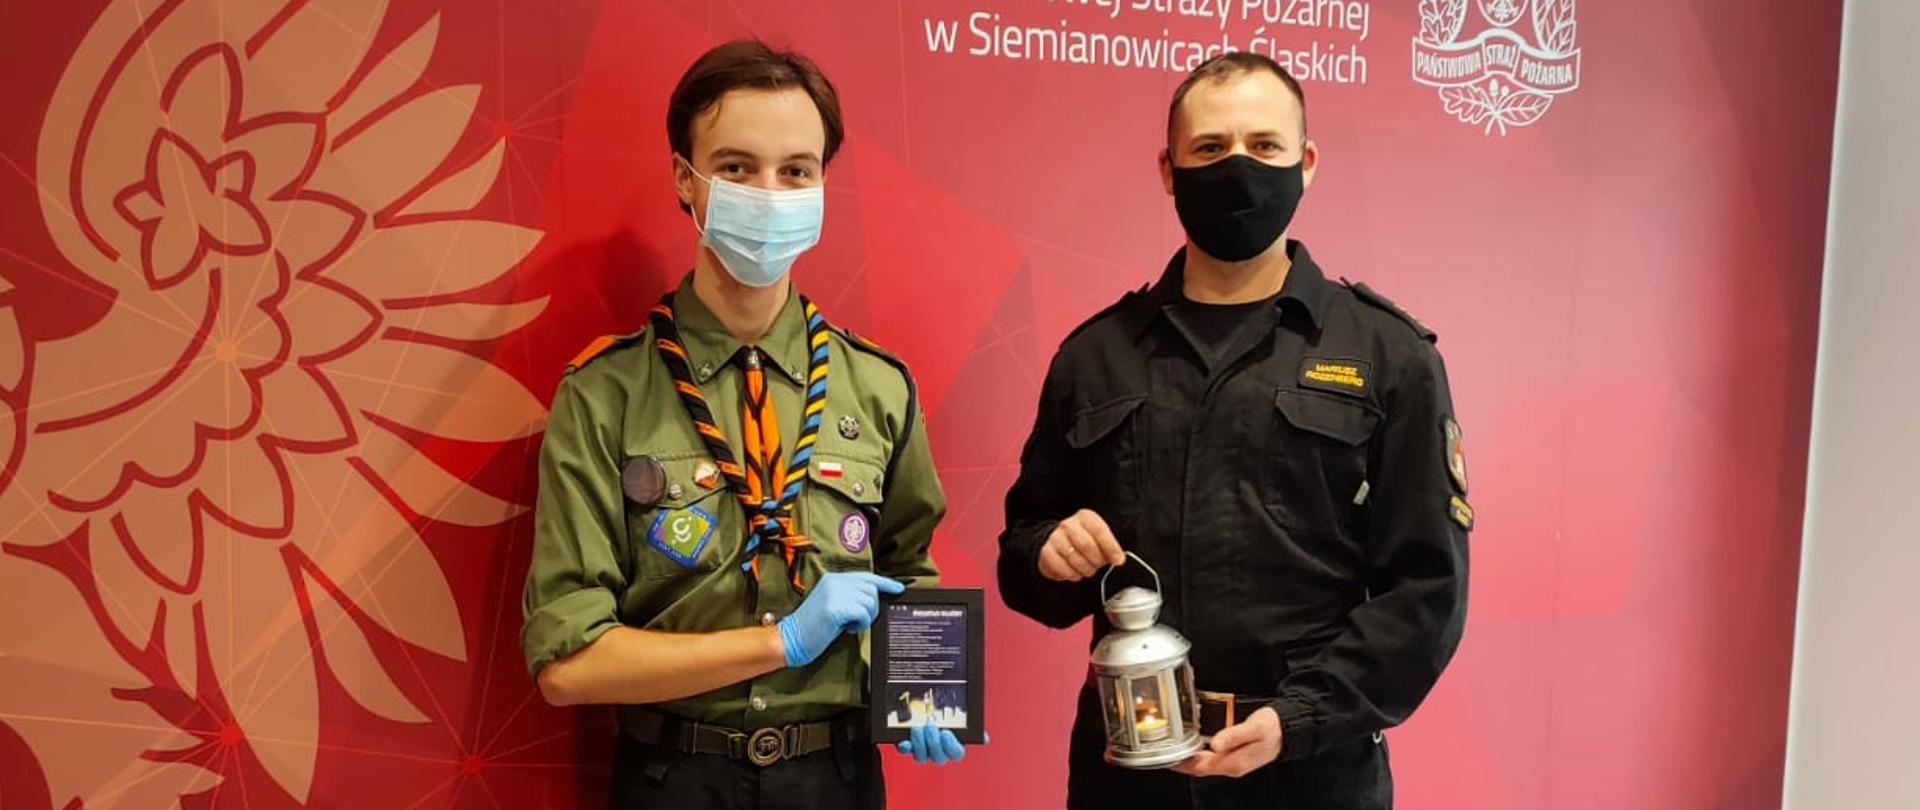 Na zdjęciu znajduje się Dowódca Jednostki Ratowniczo - Gaśniczej wraz z przedstawicielem Hufca ZHP w Siemianowicach Śląskich 